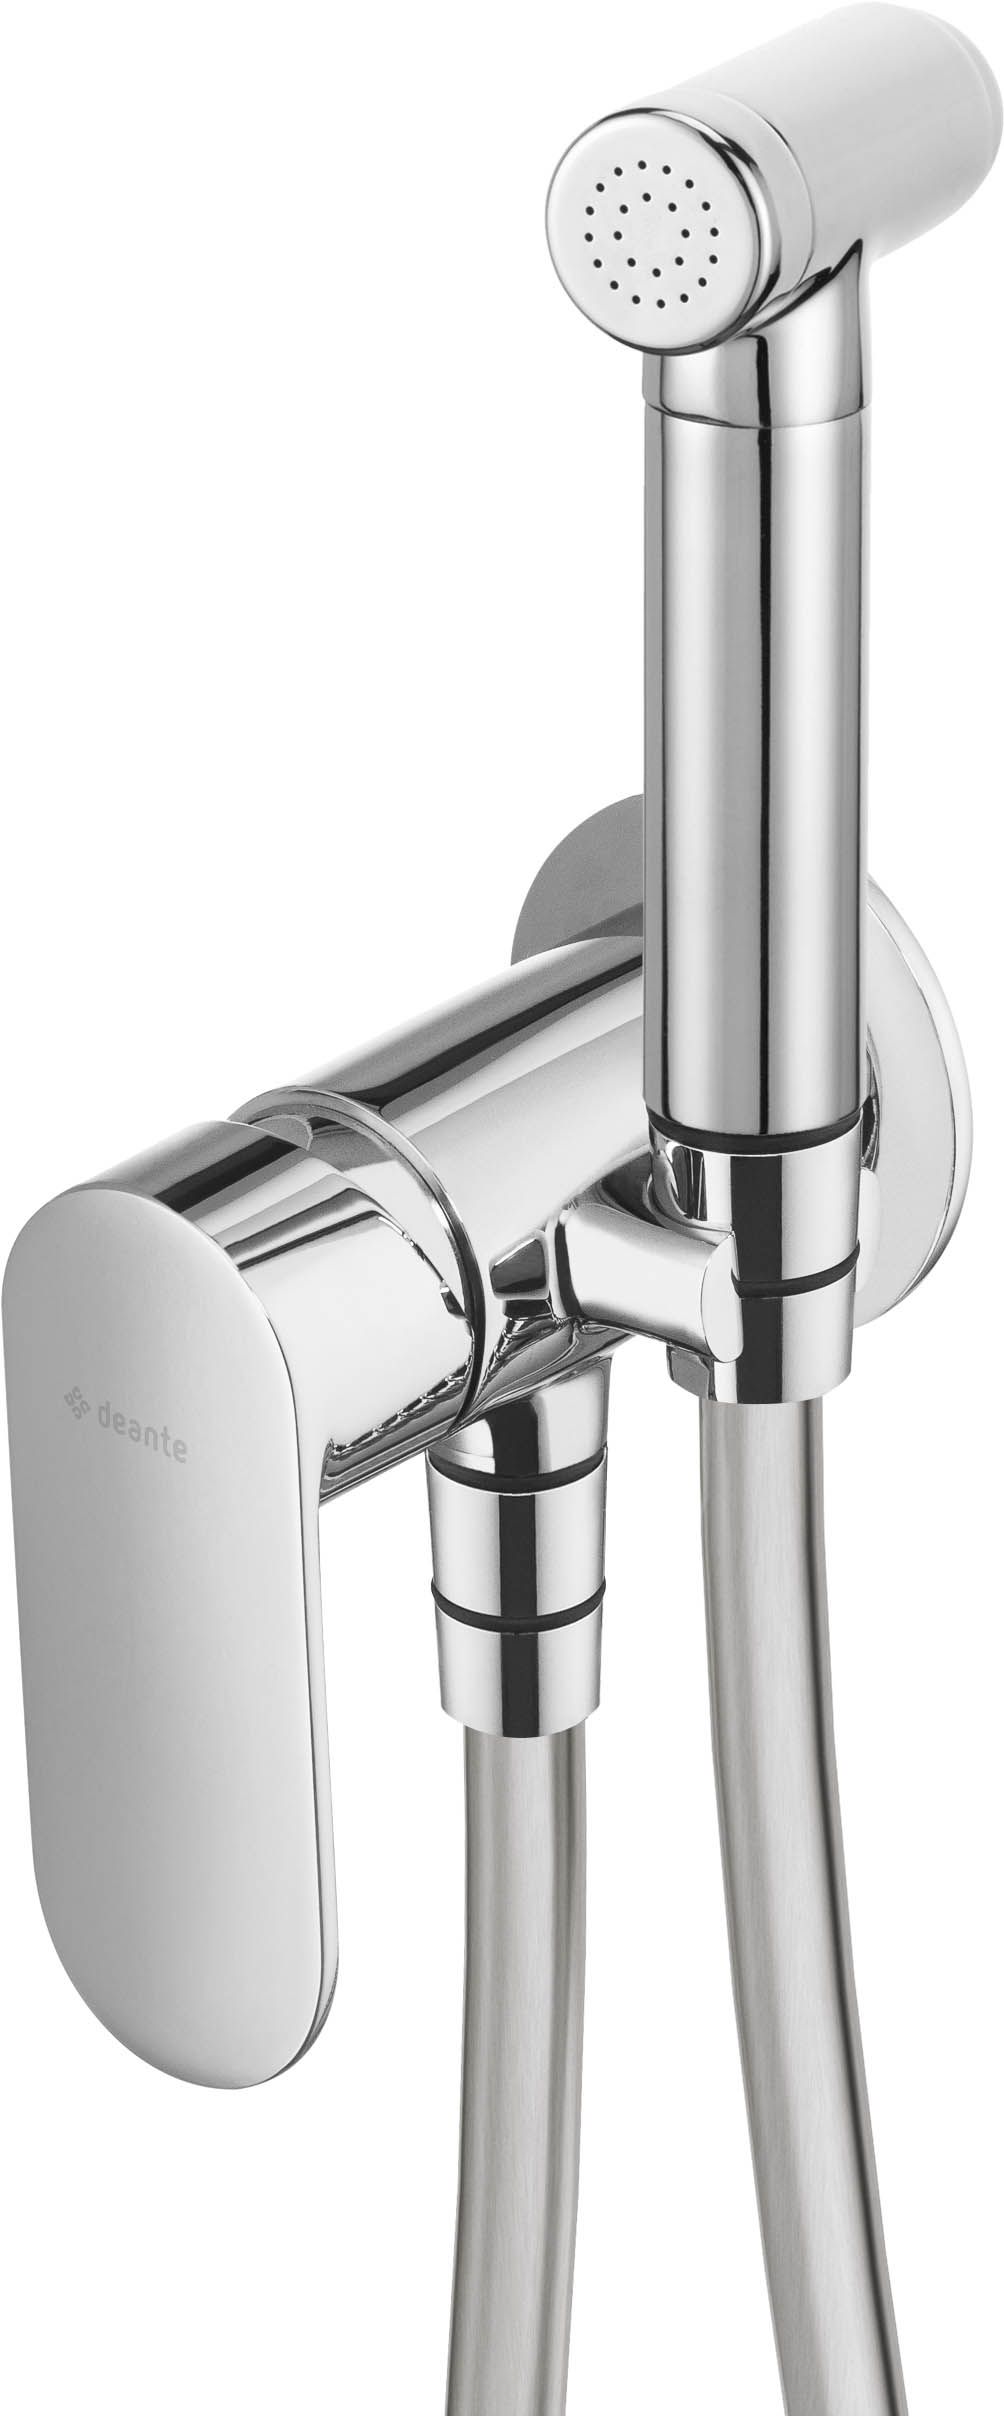 Bidet tap, concealed, with bidetta hand shower - BGA_034M - Główne zdjęcie produktowe